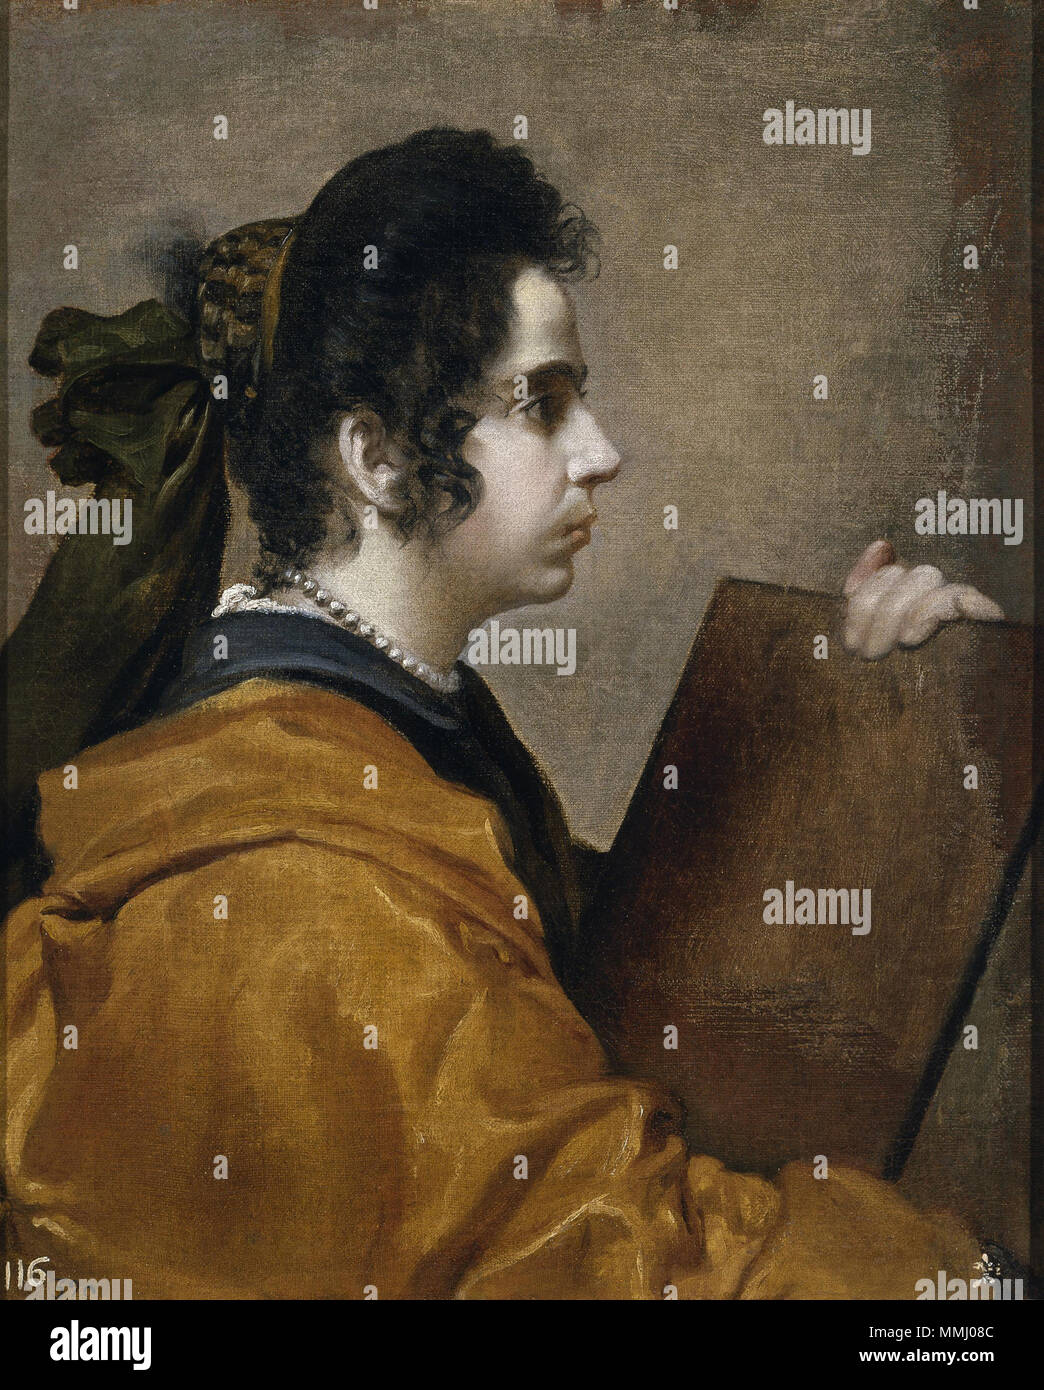 .  Español: La obra representa a Sibila, un personaje de la mitología grecorromana.  circa 1632. 45 Dama, Juana Pacheco (Museo del Prado, 1630-31) Stock Photo